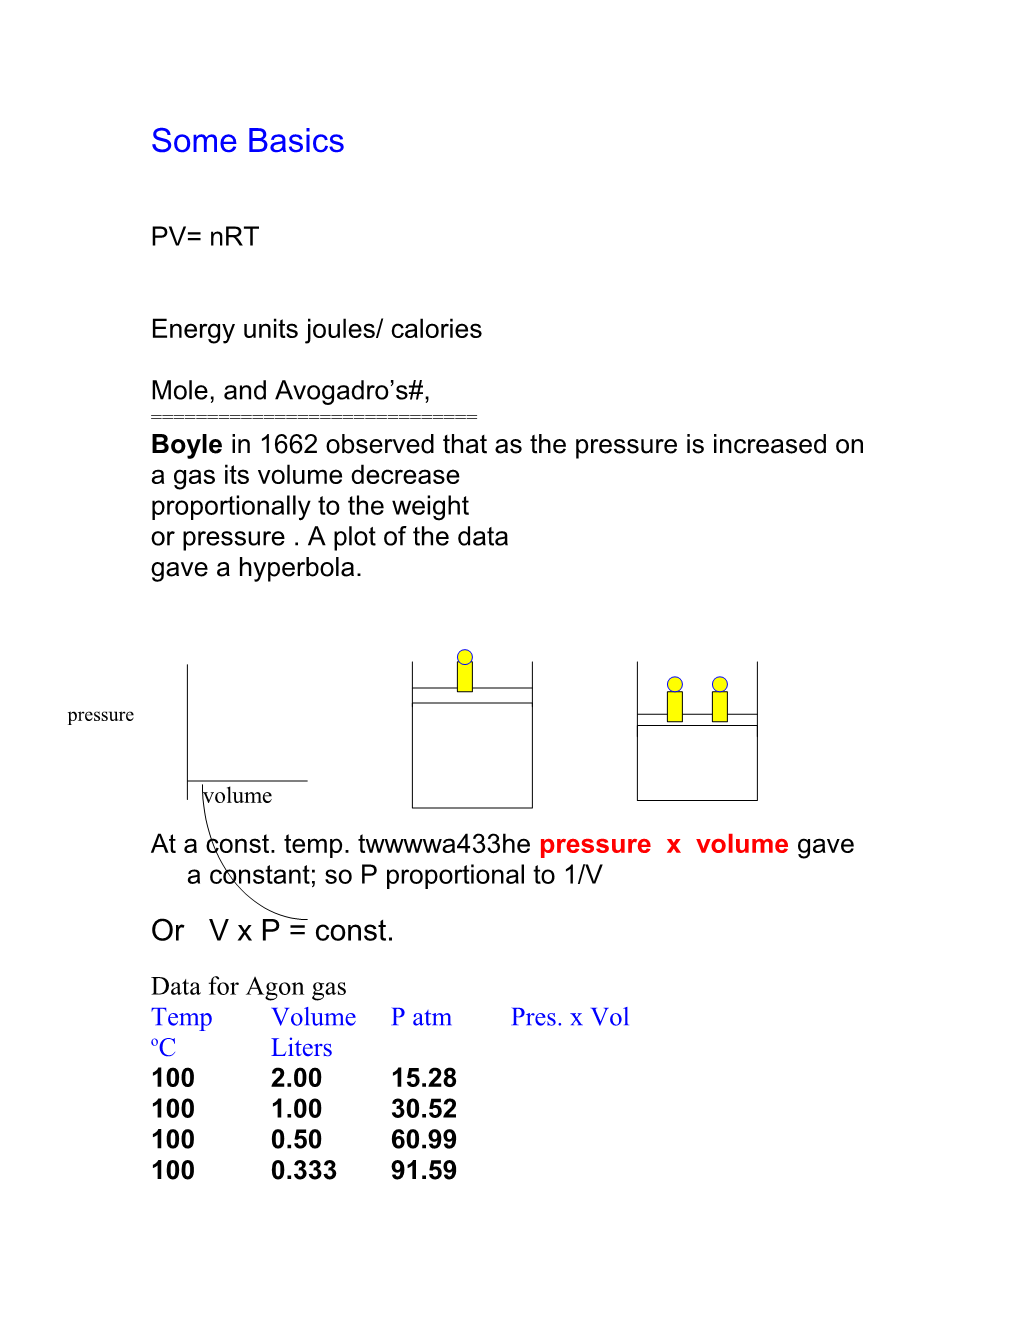 Energy Units Joules/ Calories